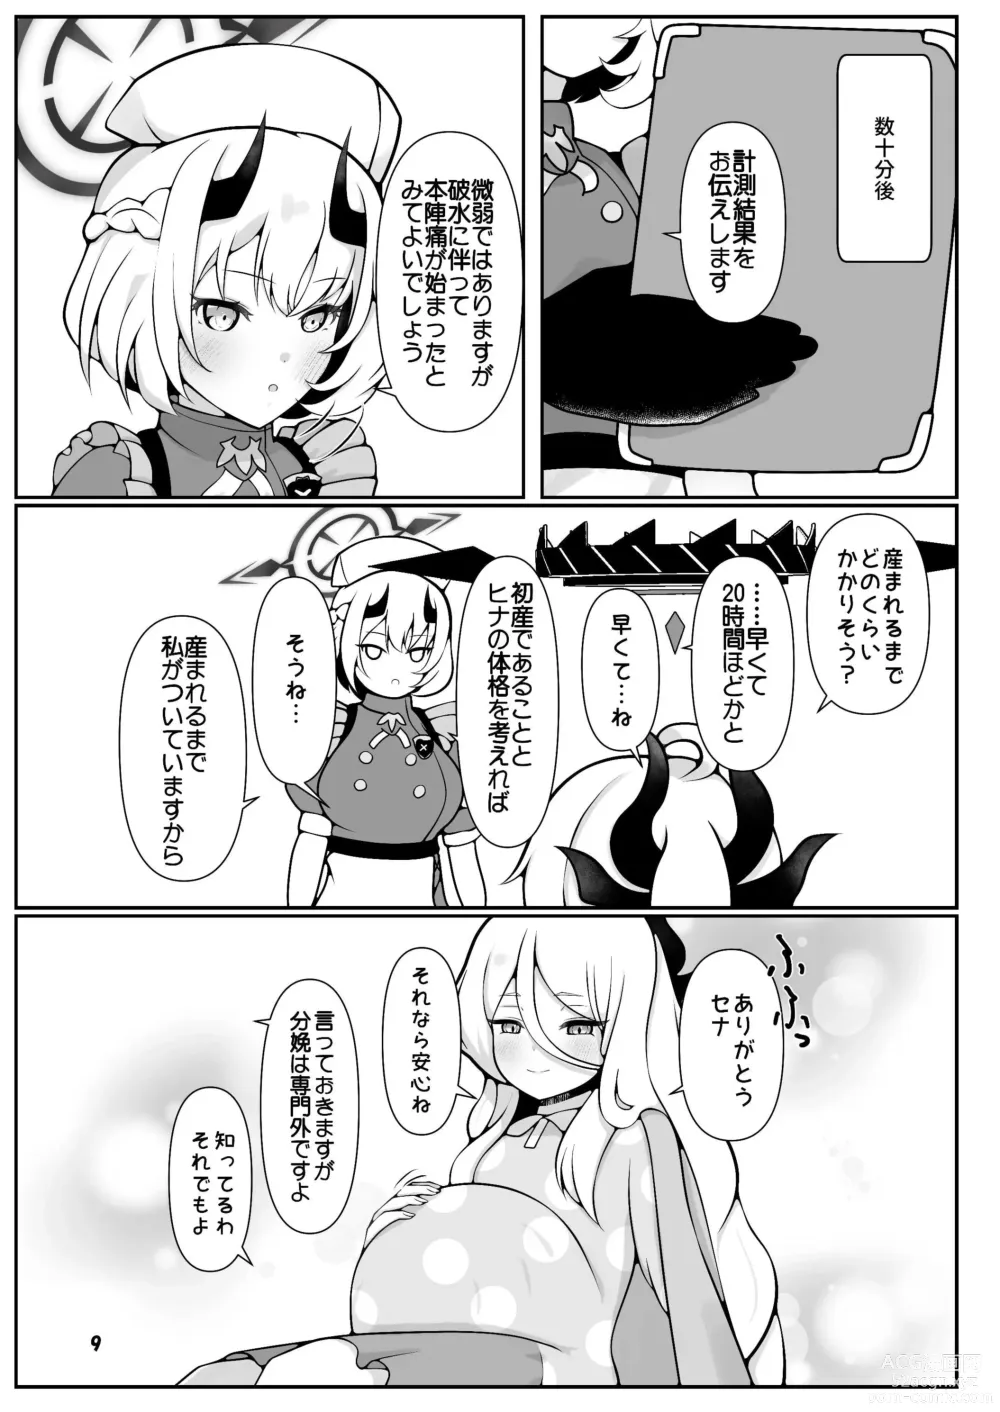 Page 9 of doujinshi Hina-chan ga ganbatte akachan oumu hon